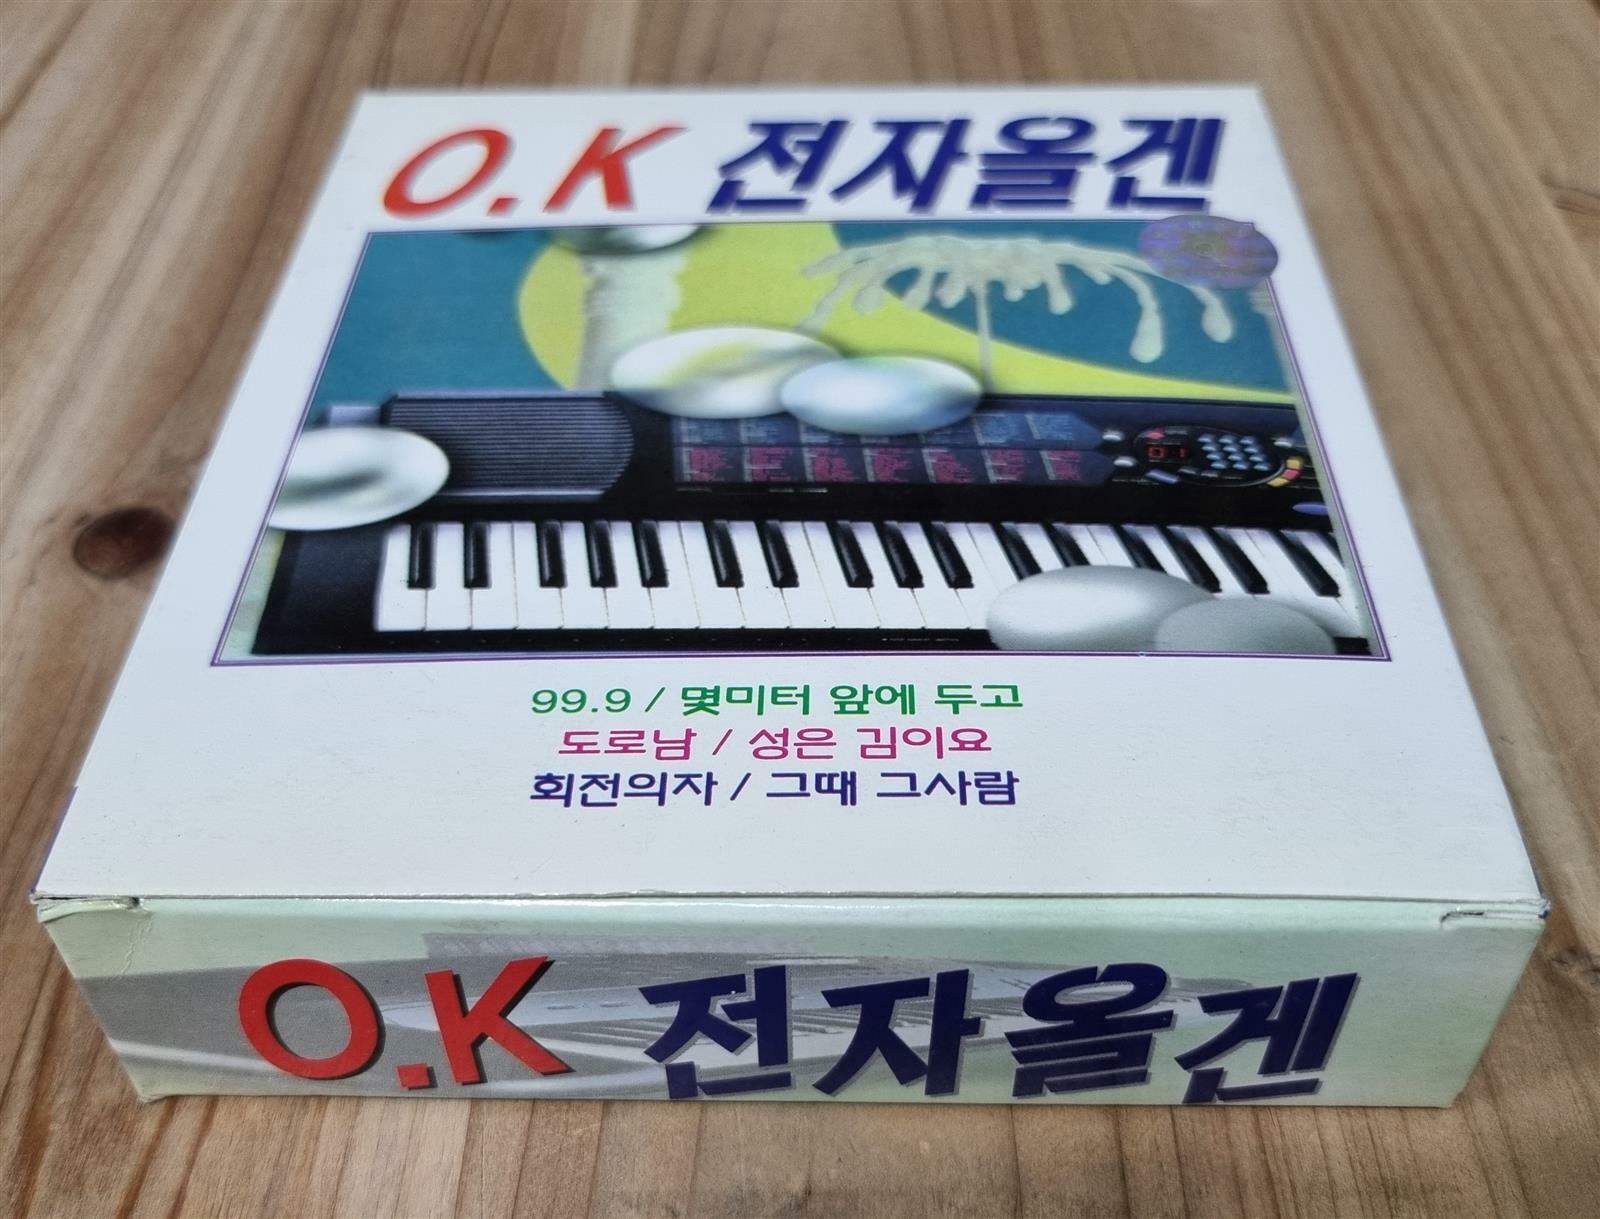 [중고] [3CD 박스 세트] 경음악 OK 전자올겐 vol.1 ~ 3 : 디스코 / 종합편 / 지루박